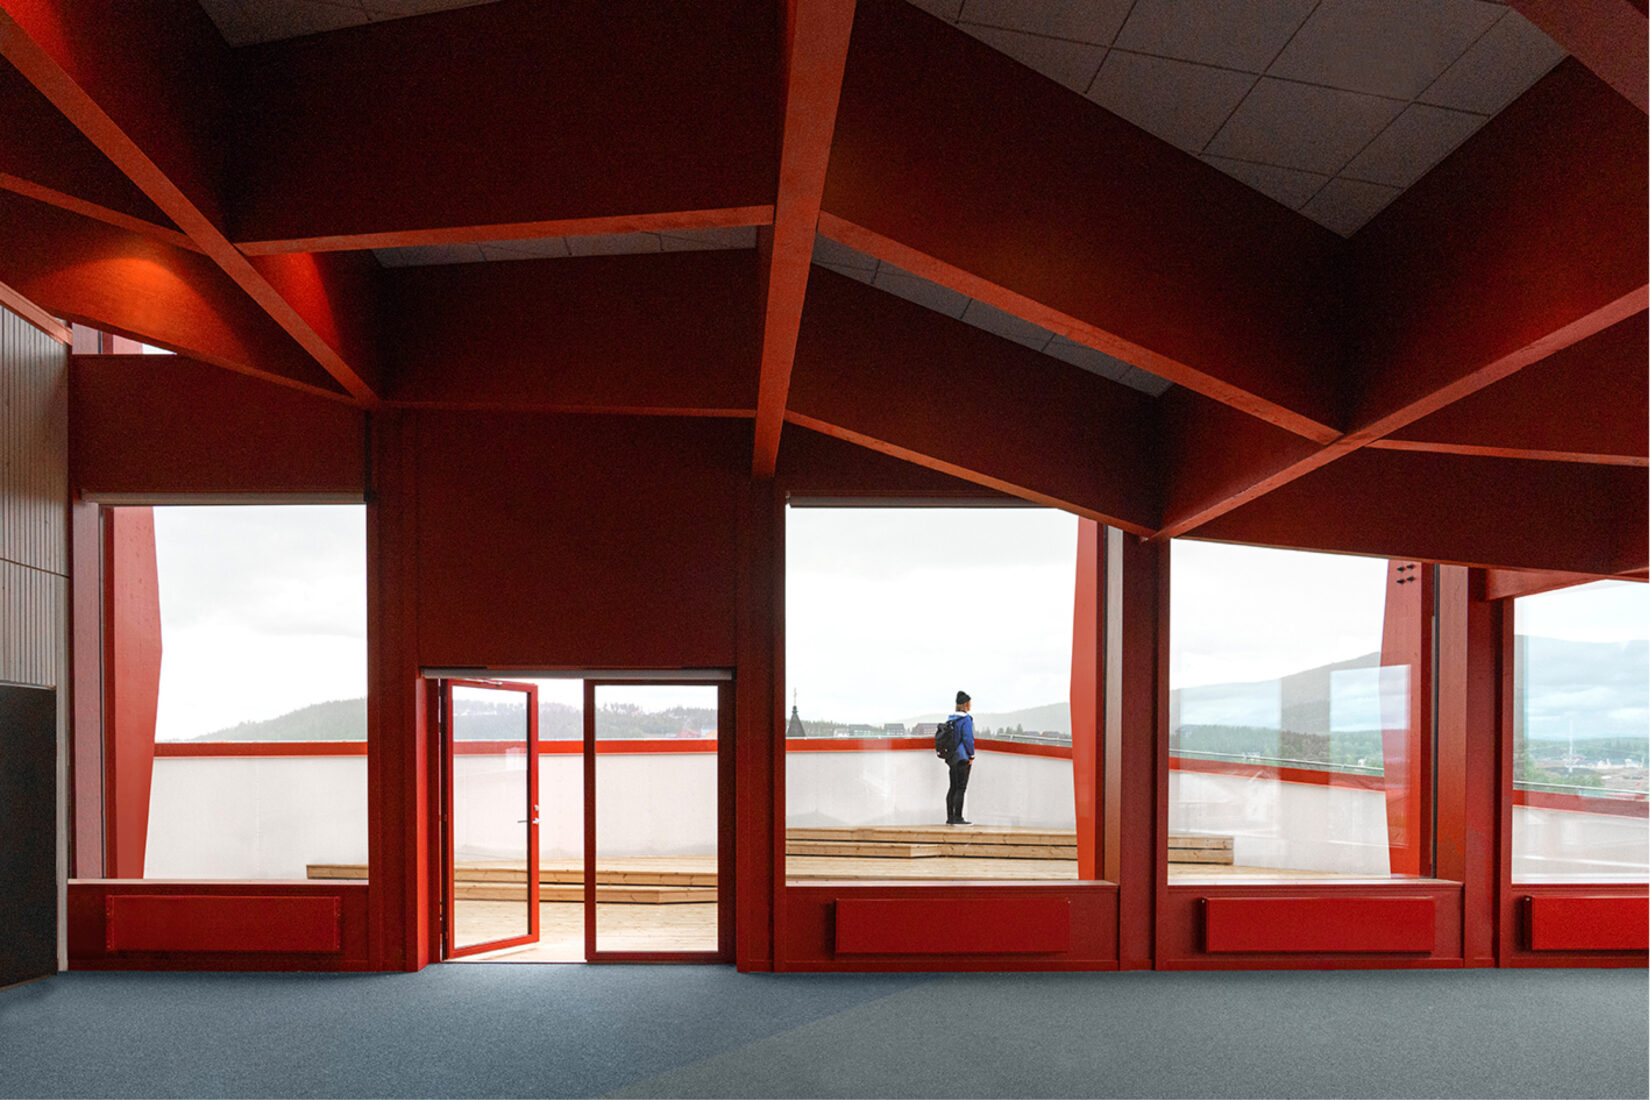 Photo prise de l'intérieur d'un bätiment moderne aux structures rouges, avec dans le fond une porte ouverte sur une terrasse et une personne qui se tient là pour admirer la vue.